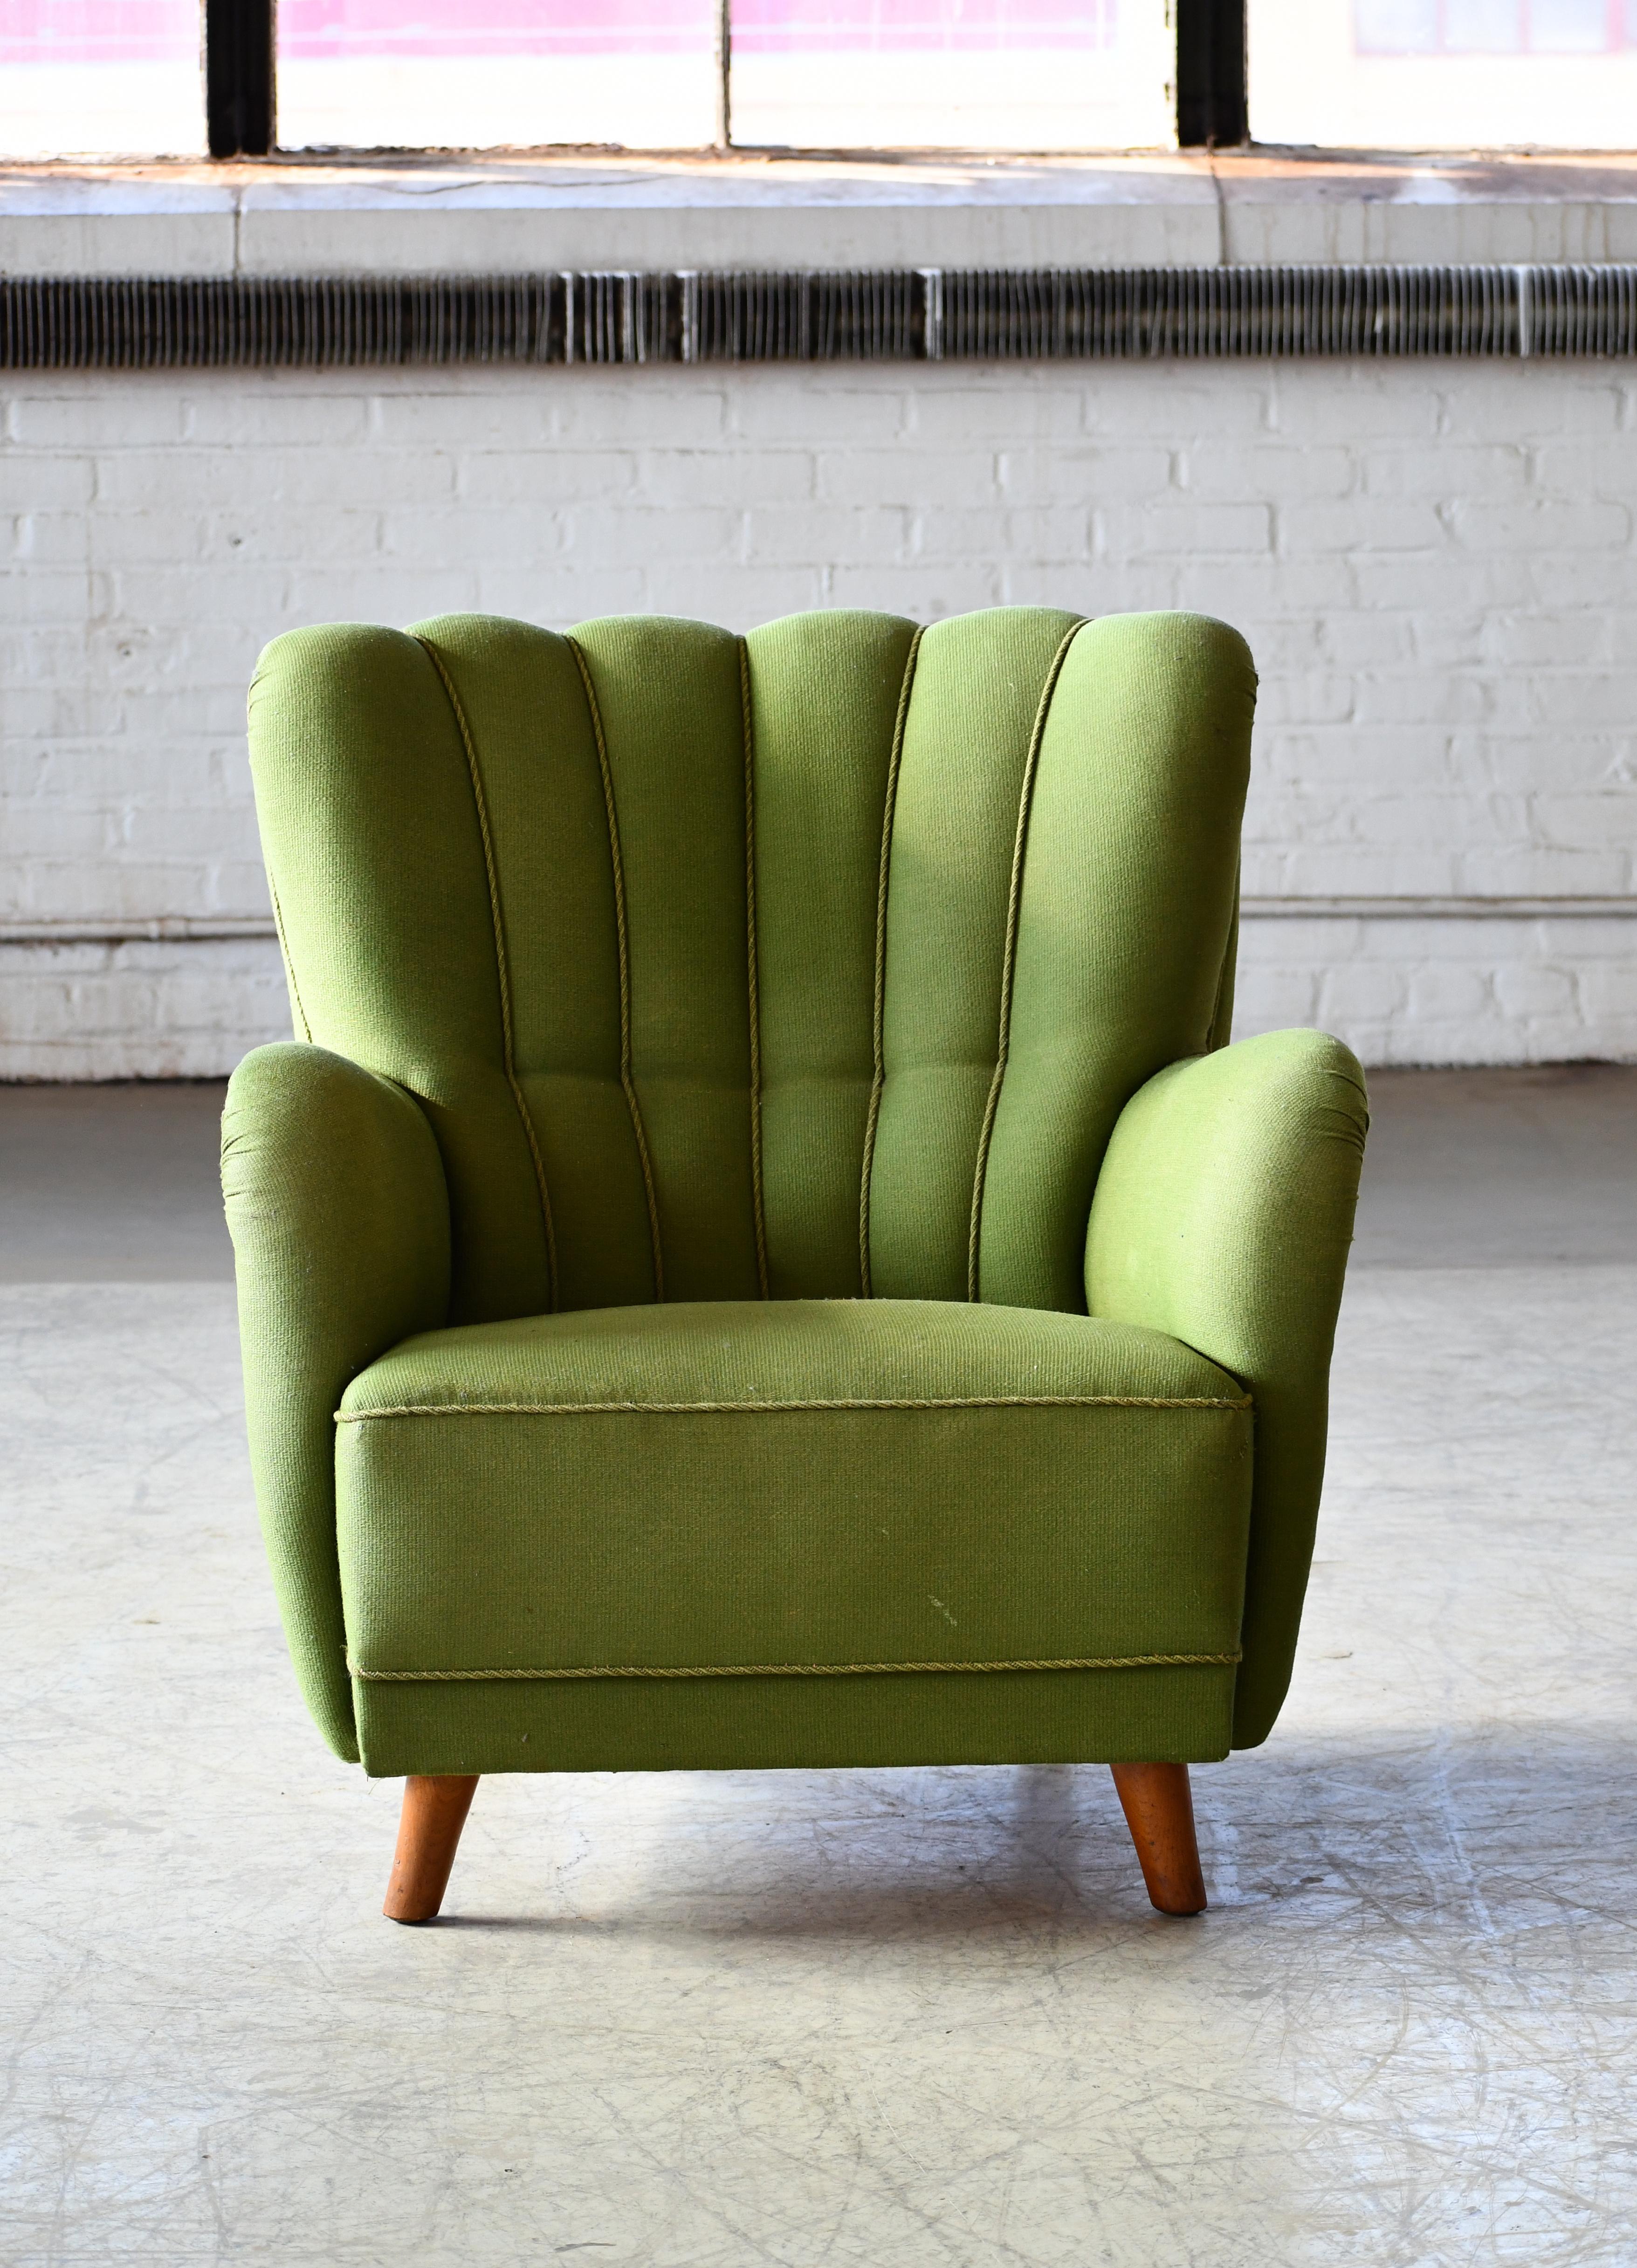 Super charmanter Sessel aus den 1940er Jahren im Stil von Mogens Lassen mit sehr skulpturaler, organischer Form und harmonischen Proportionen. Vielseitig und sehr gut geeignet für einen kleineren Raum, der eine stärkere Aussage braucht. Auf